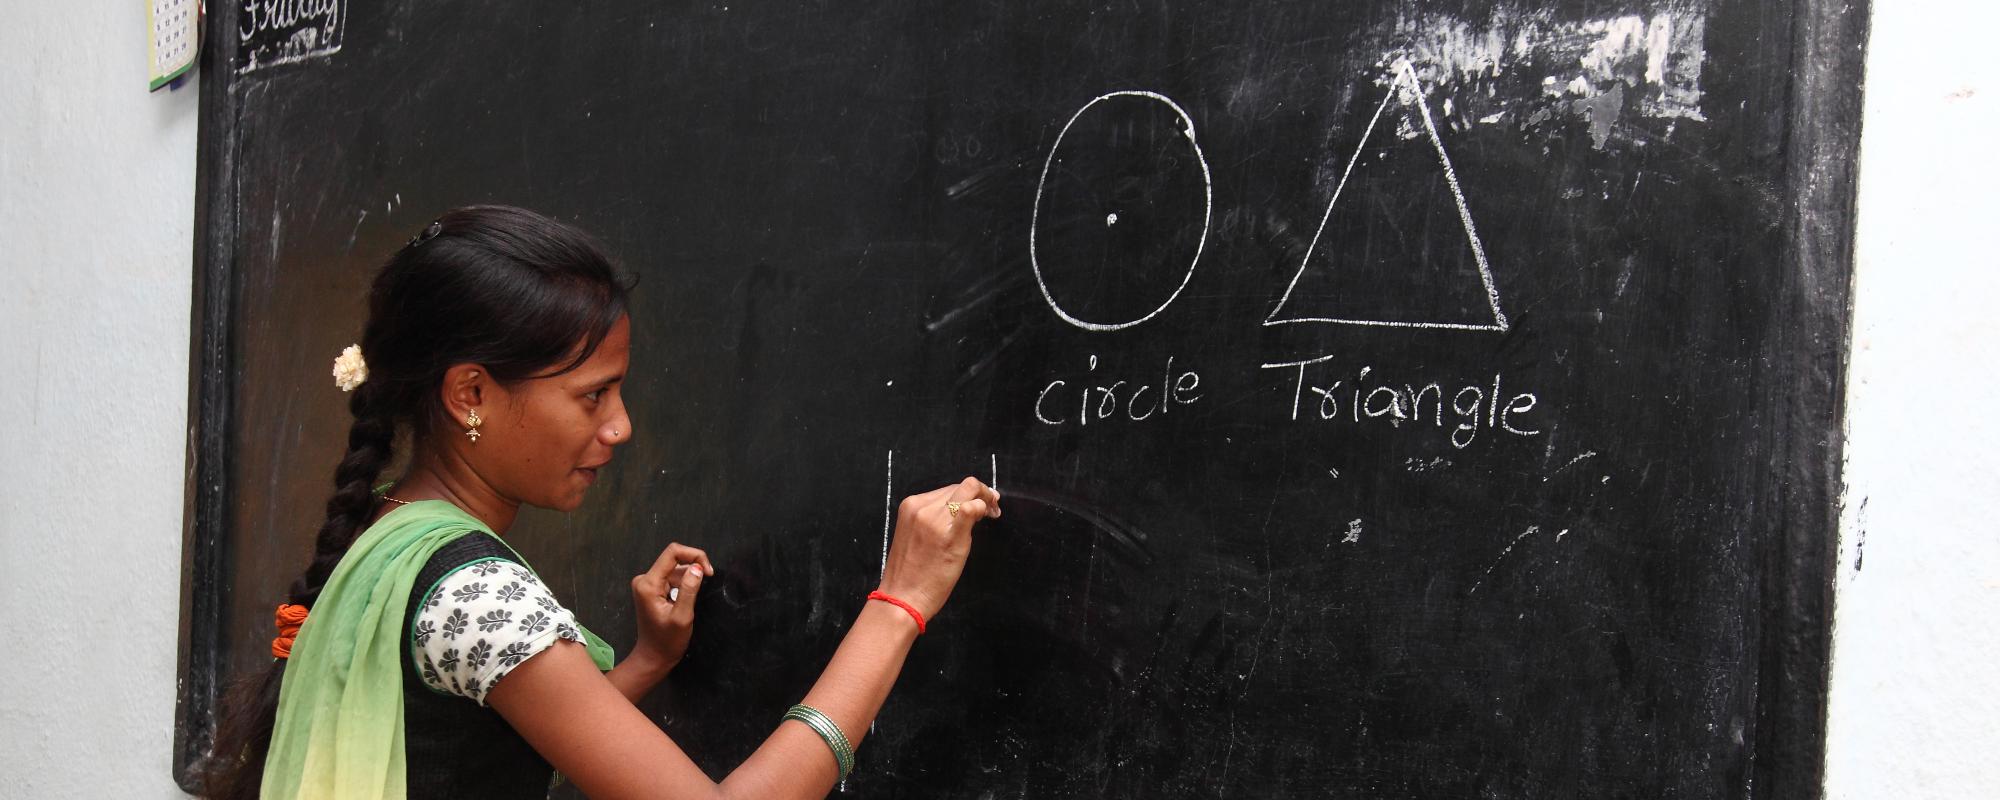 Girl in classroom at blackboard